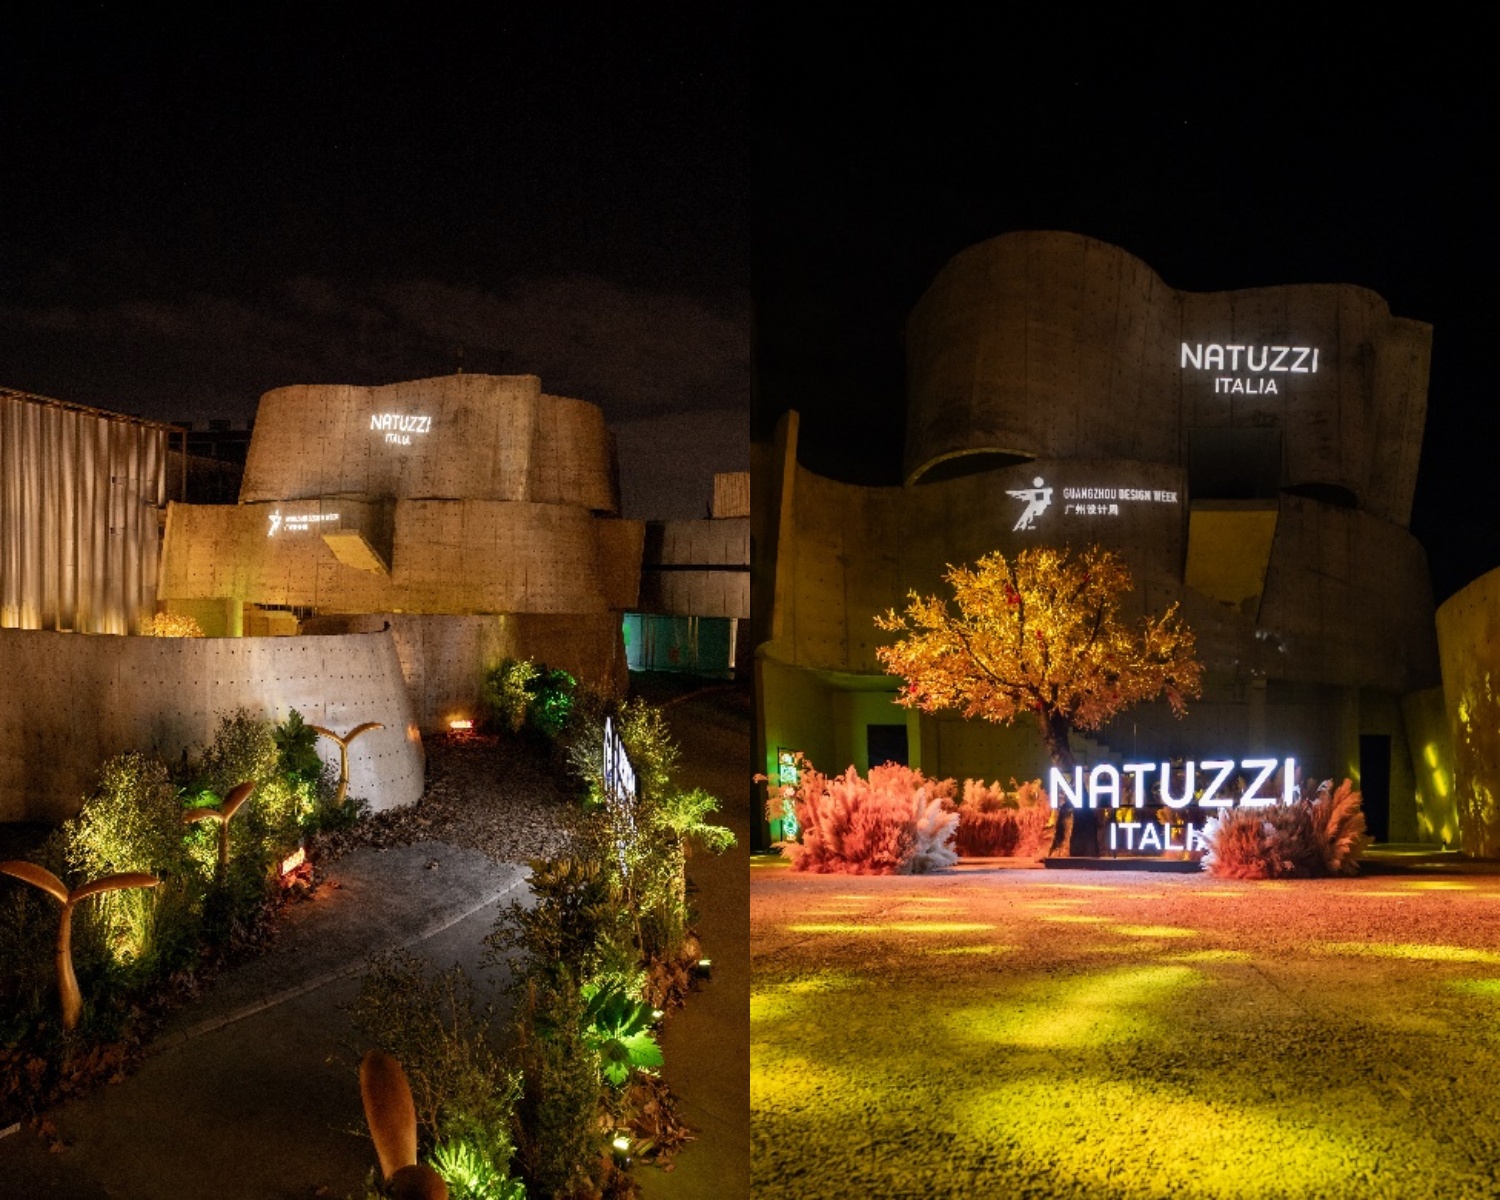 悦纳新生 筑光前行 了不起的美好创享家&N+Design Awards 2023颁奖盛典 暨Natuzzi Italia之夜